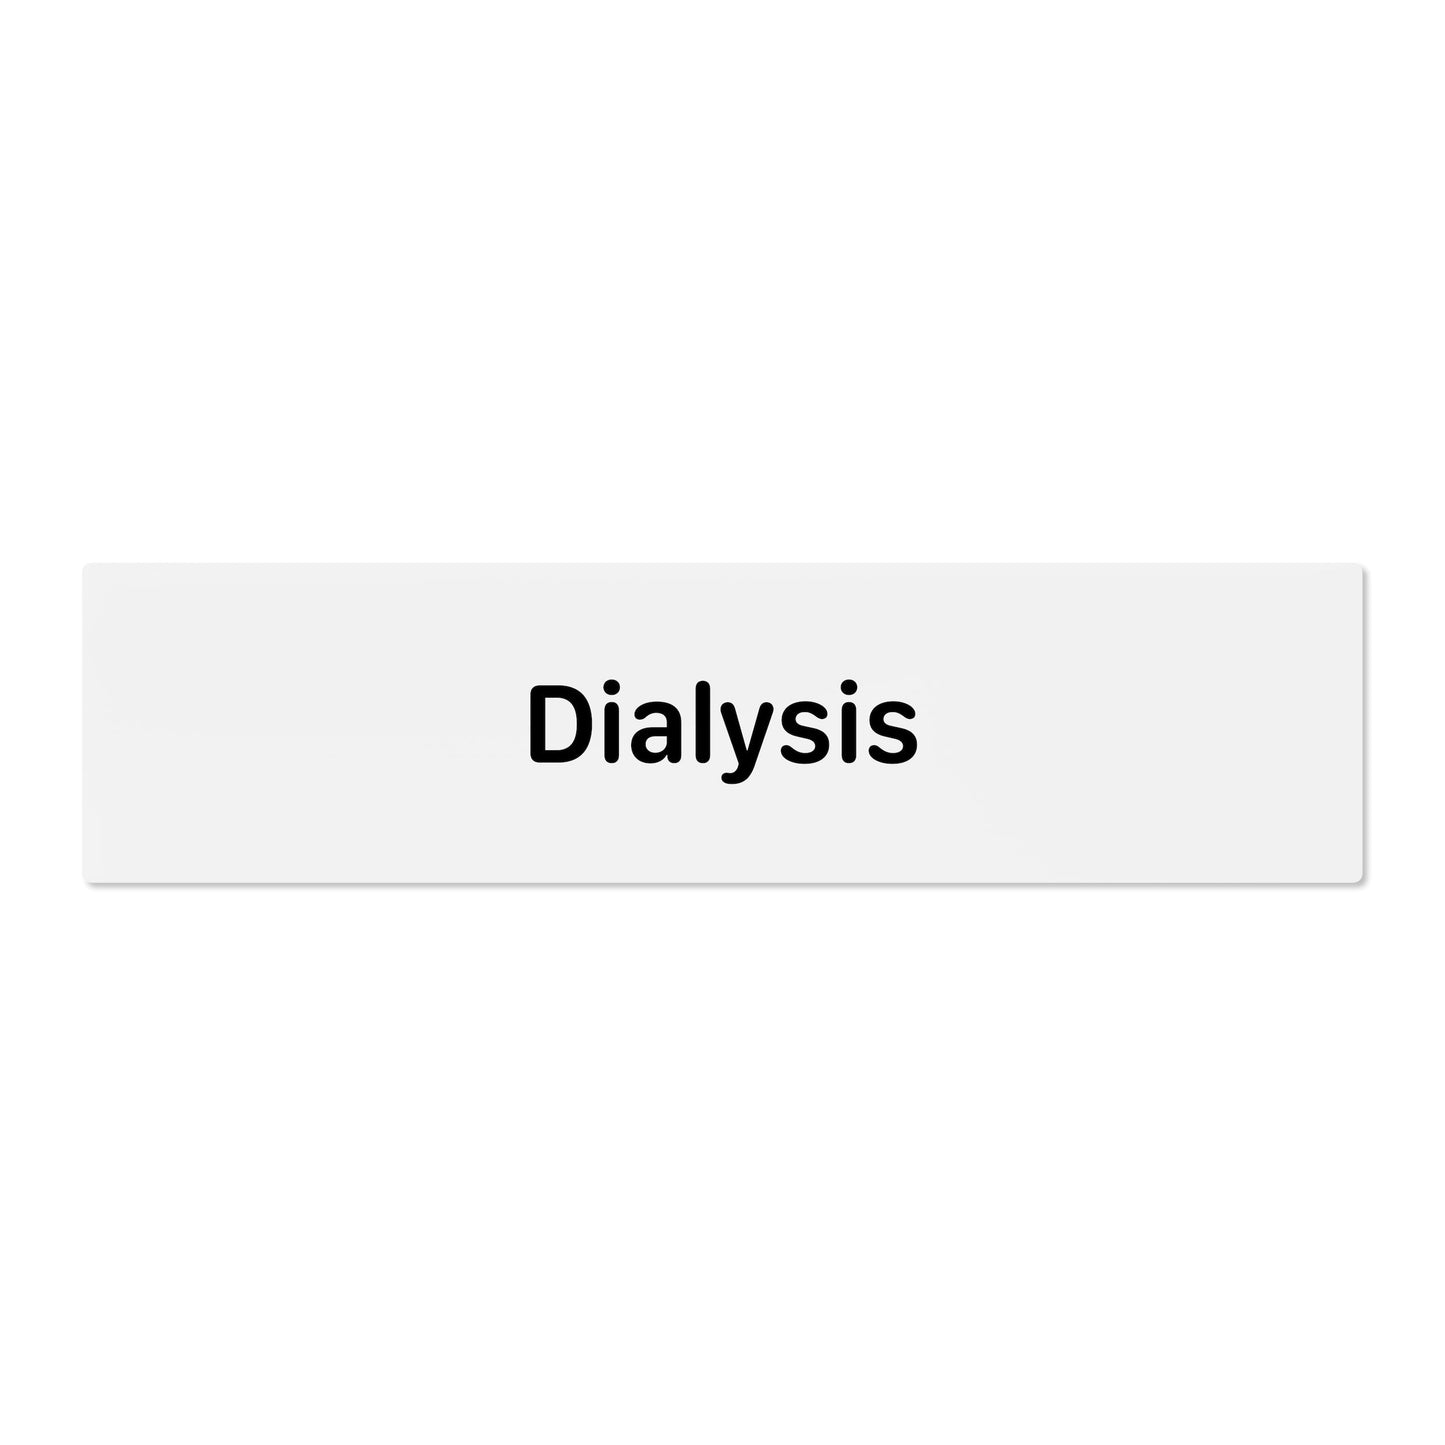 Dialysis